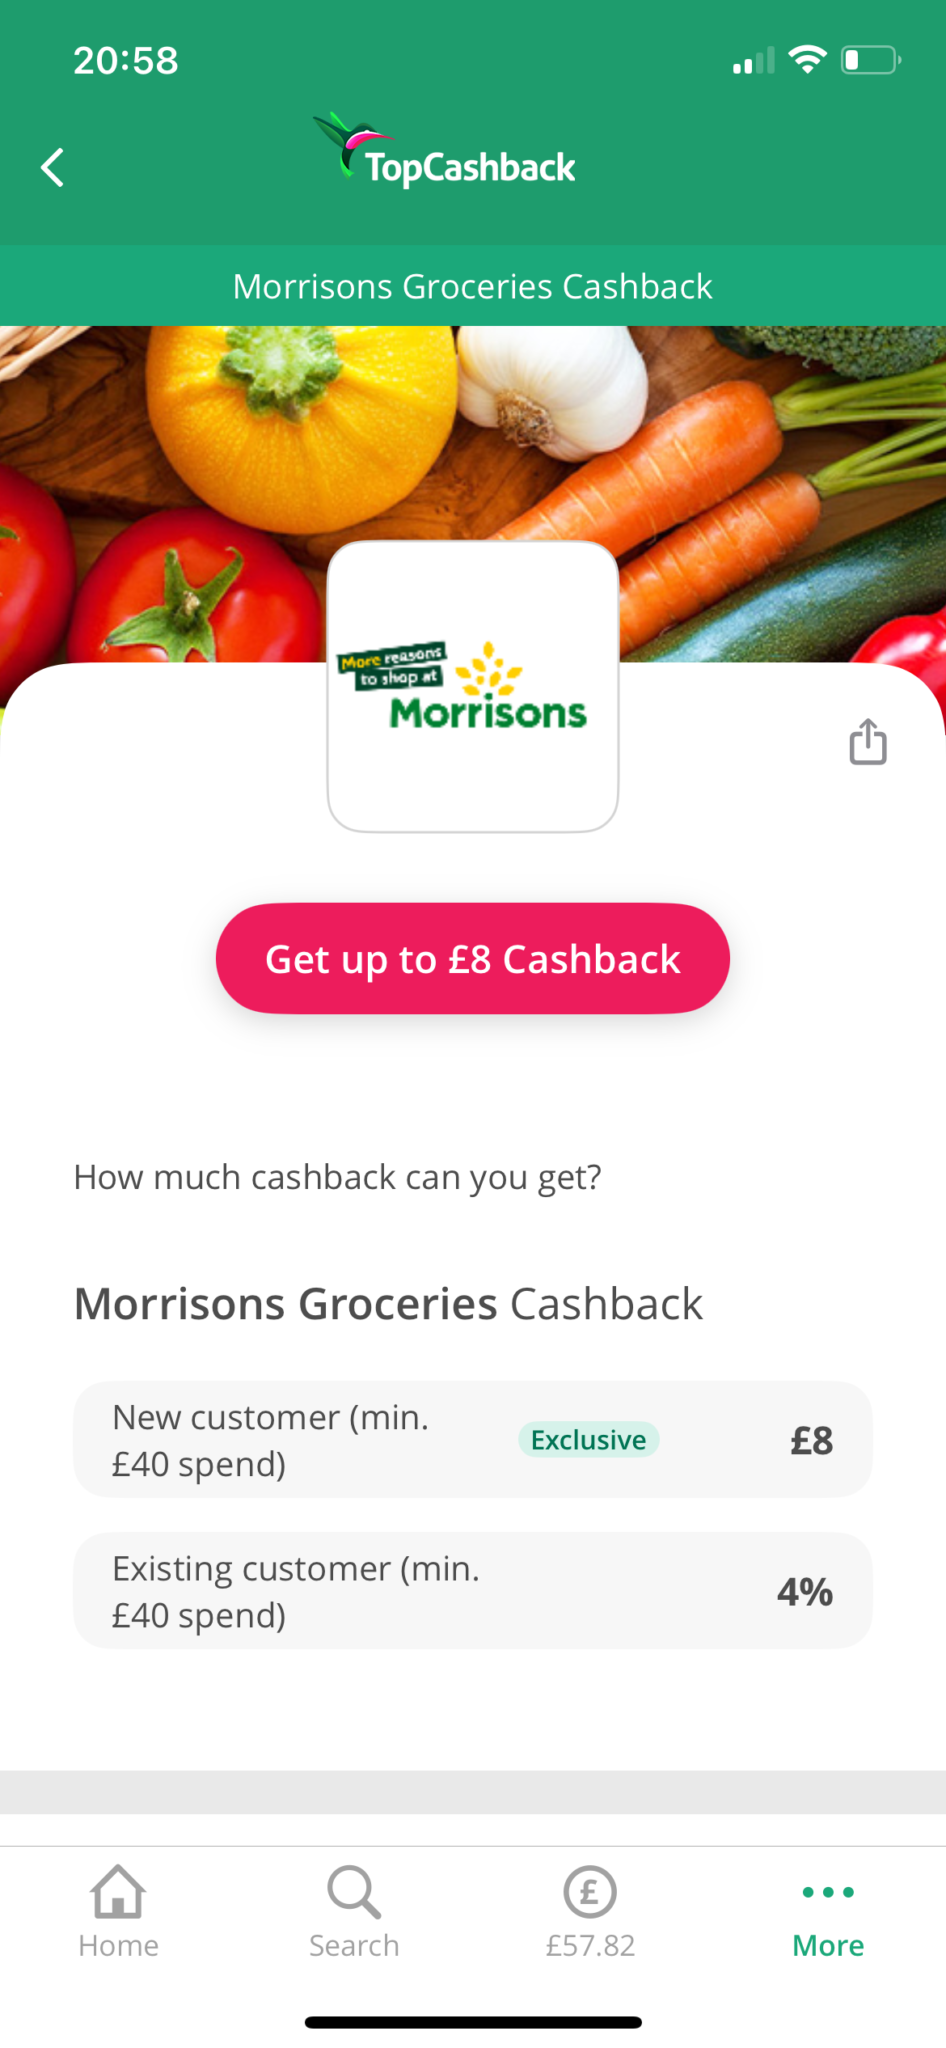 TopCashback Morrisons supermarket cashback 